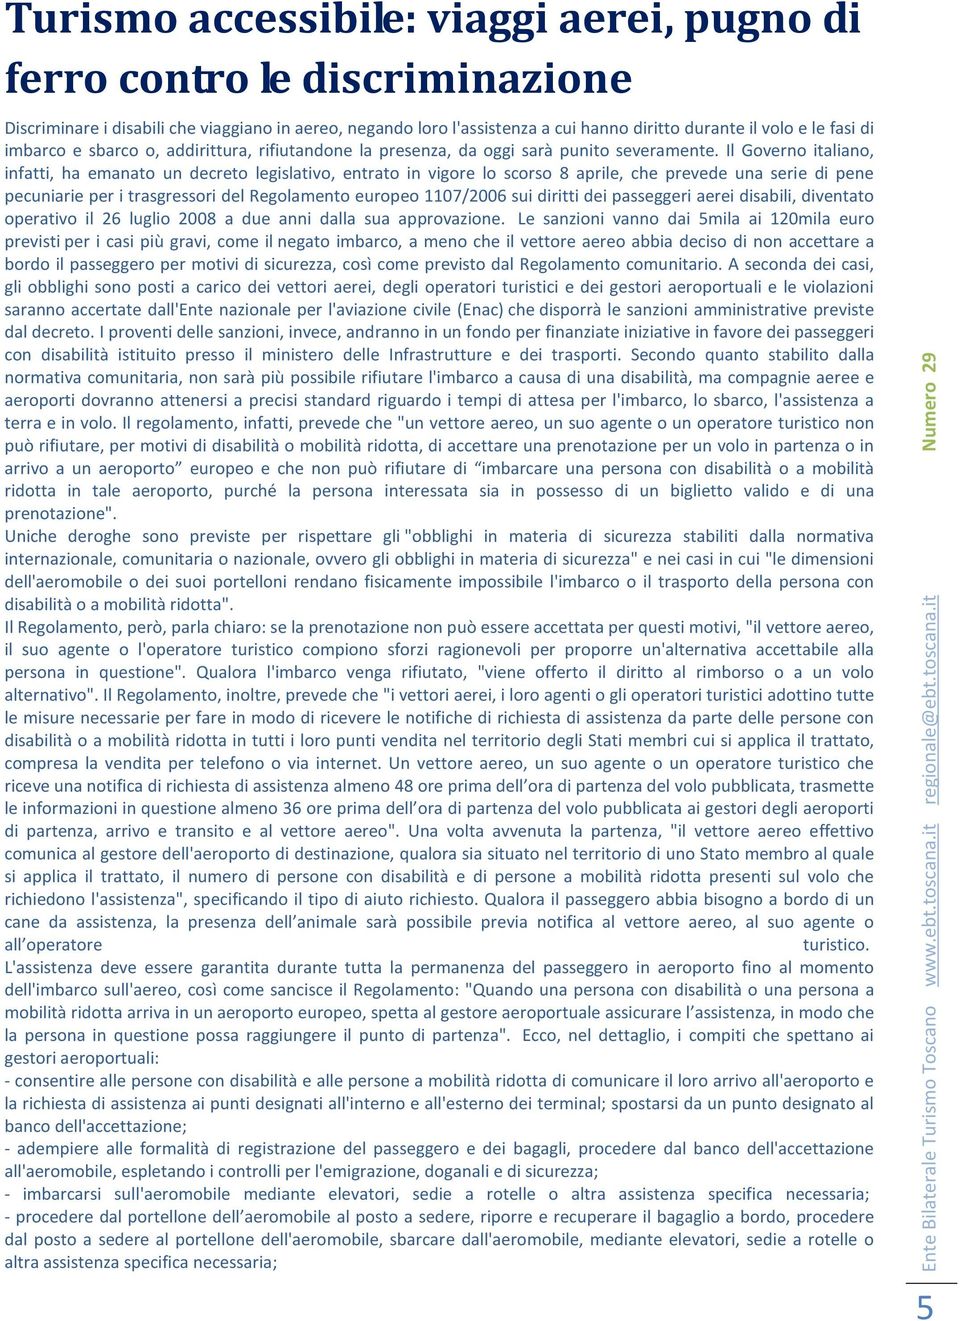 Il Governo italiano, infatti, ha emanato un decreto legislativo, entrato in vigore lo scorso 8 aprile, che prevede una serie di pene pecuniarie per i trasgressori del Regolamento europeo 1107/2006